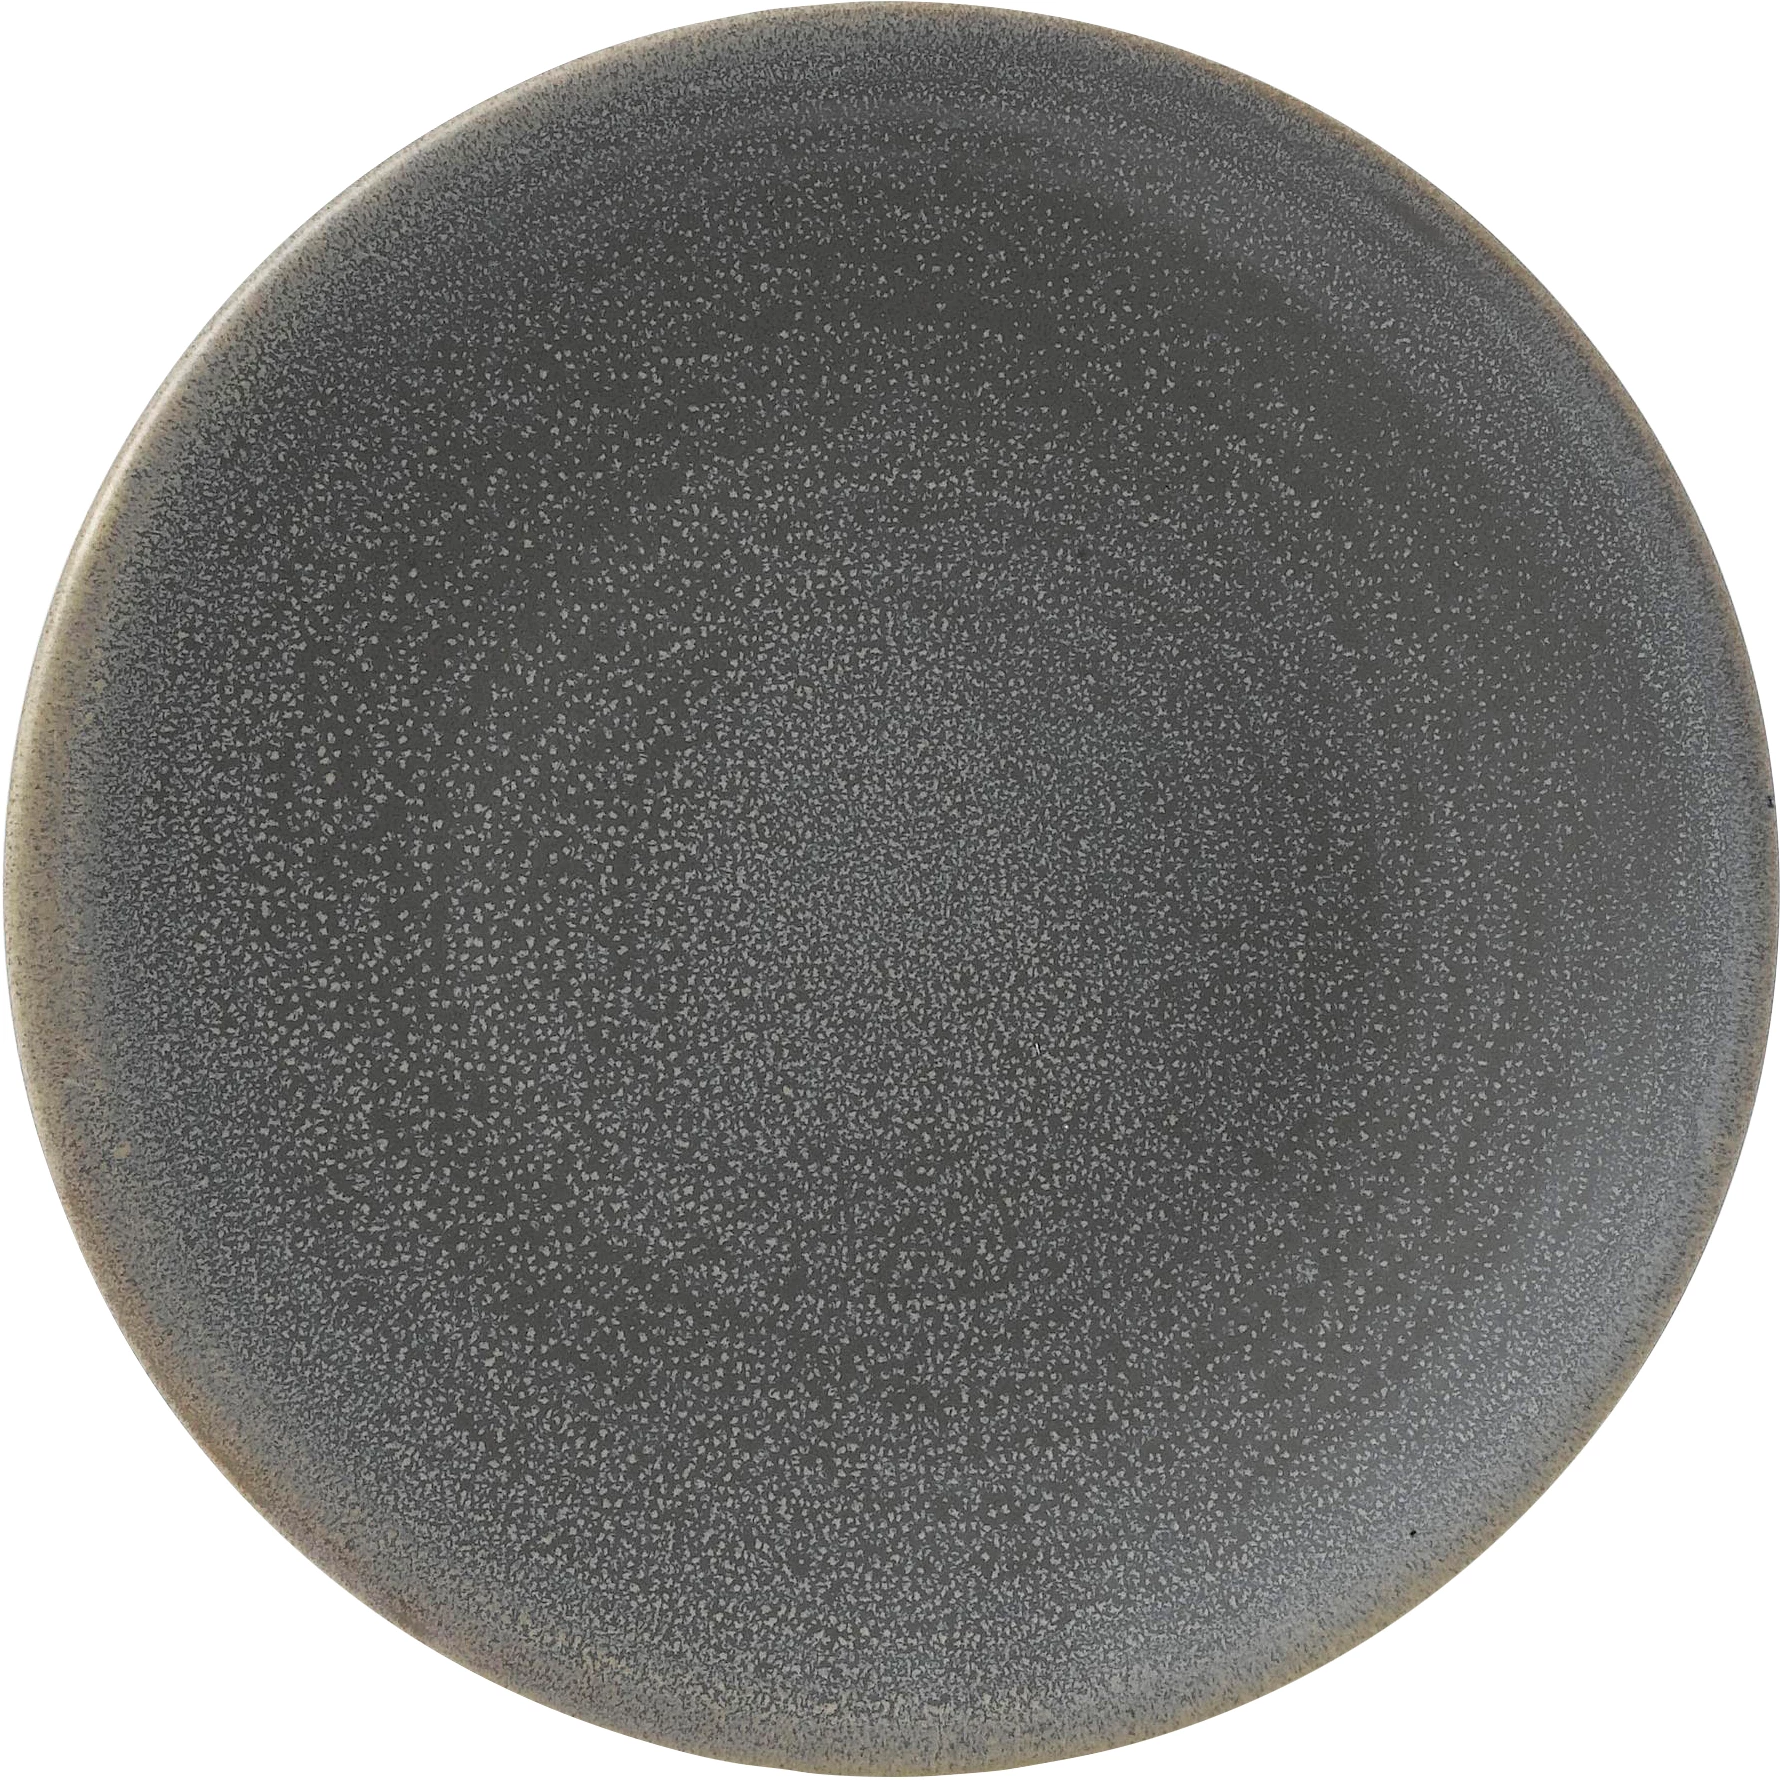 Dudson Evo Granite flad tallerken, granit, ø20,5 cm